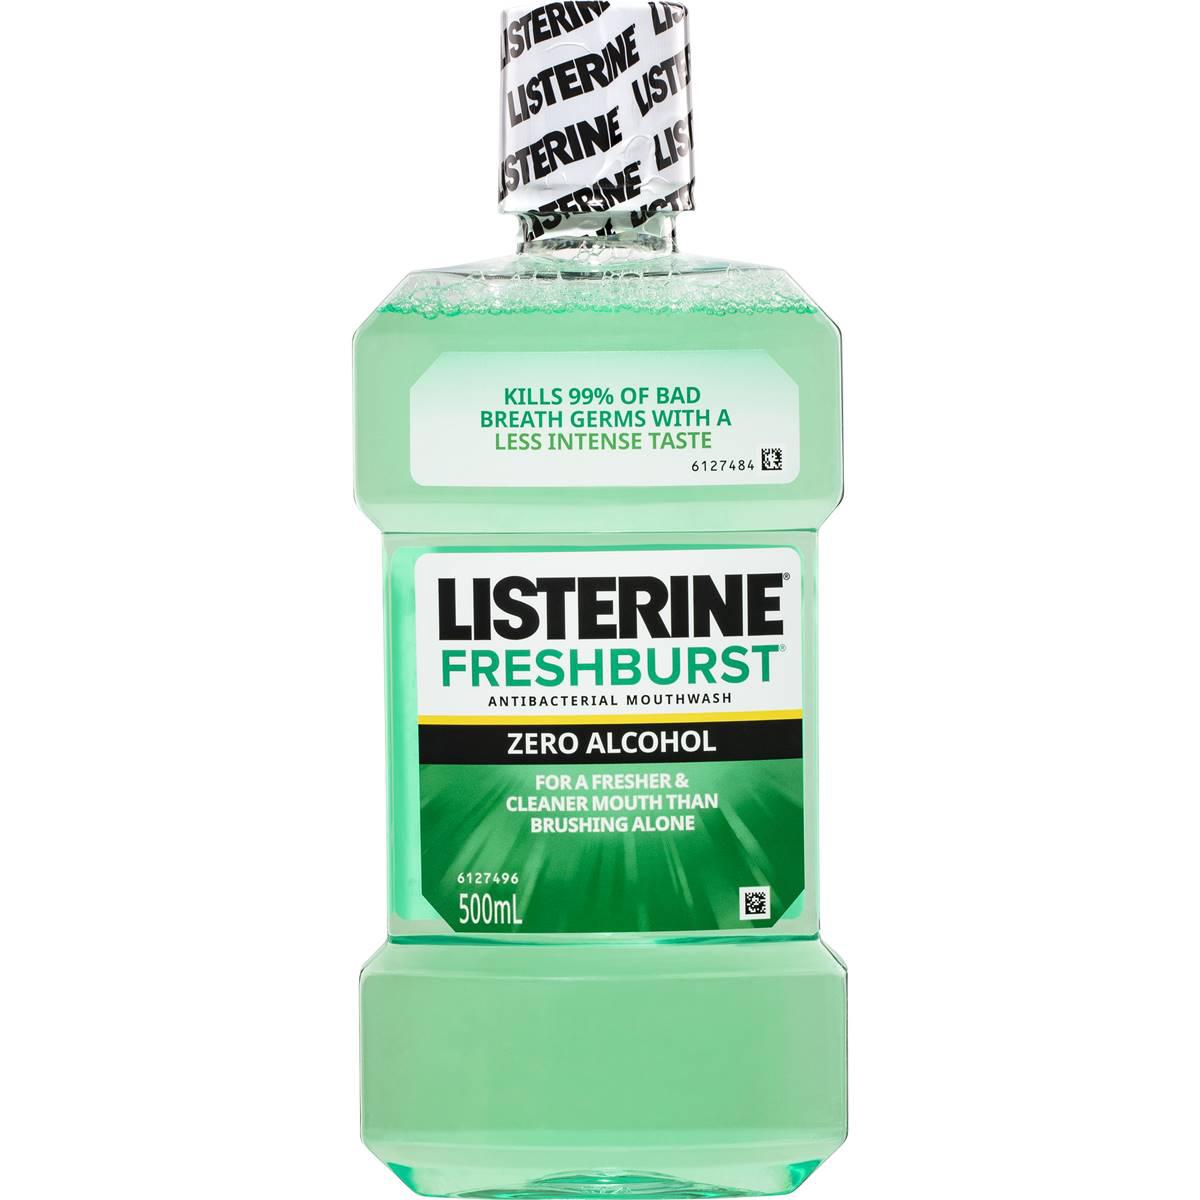 Listerine Freshburst Zero Alcohol Antibacterial Mouthwash 500ml